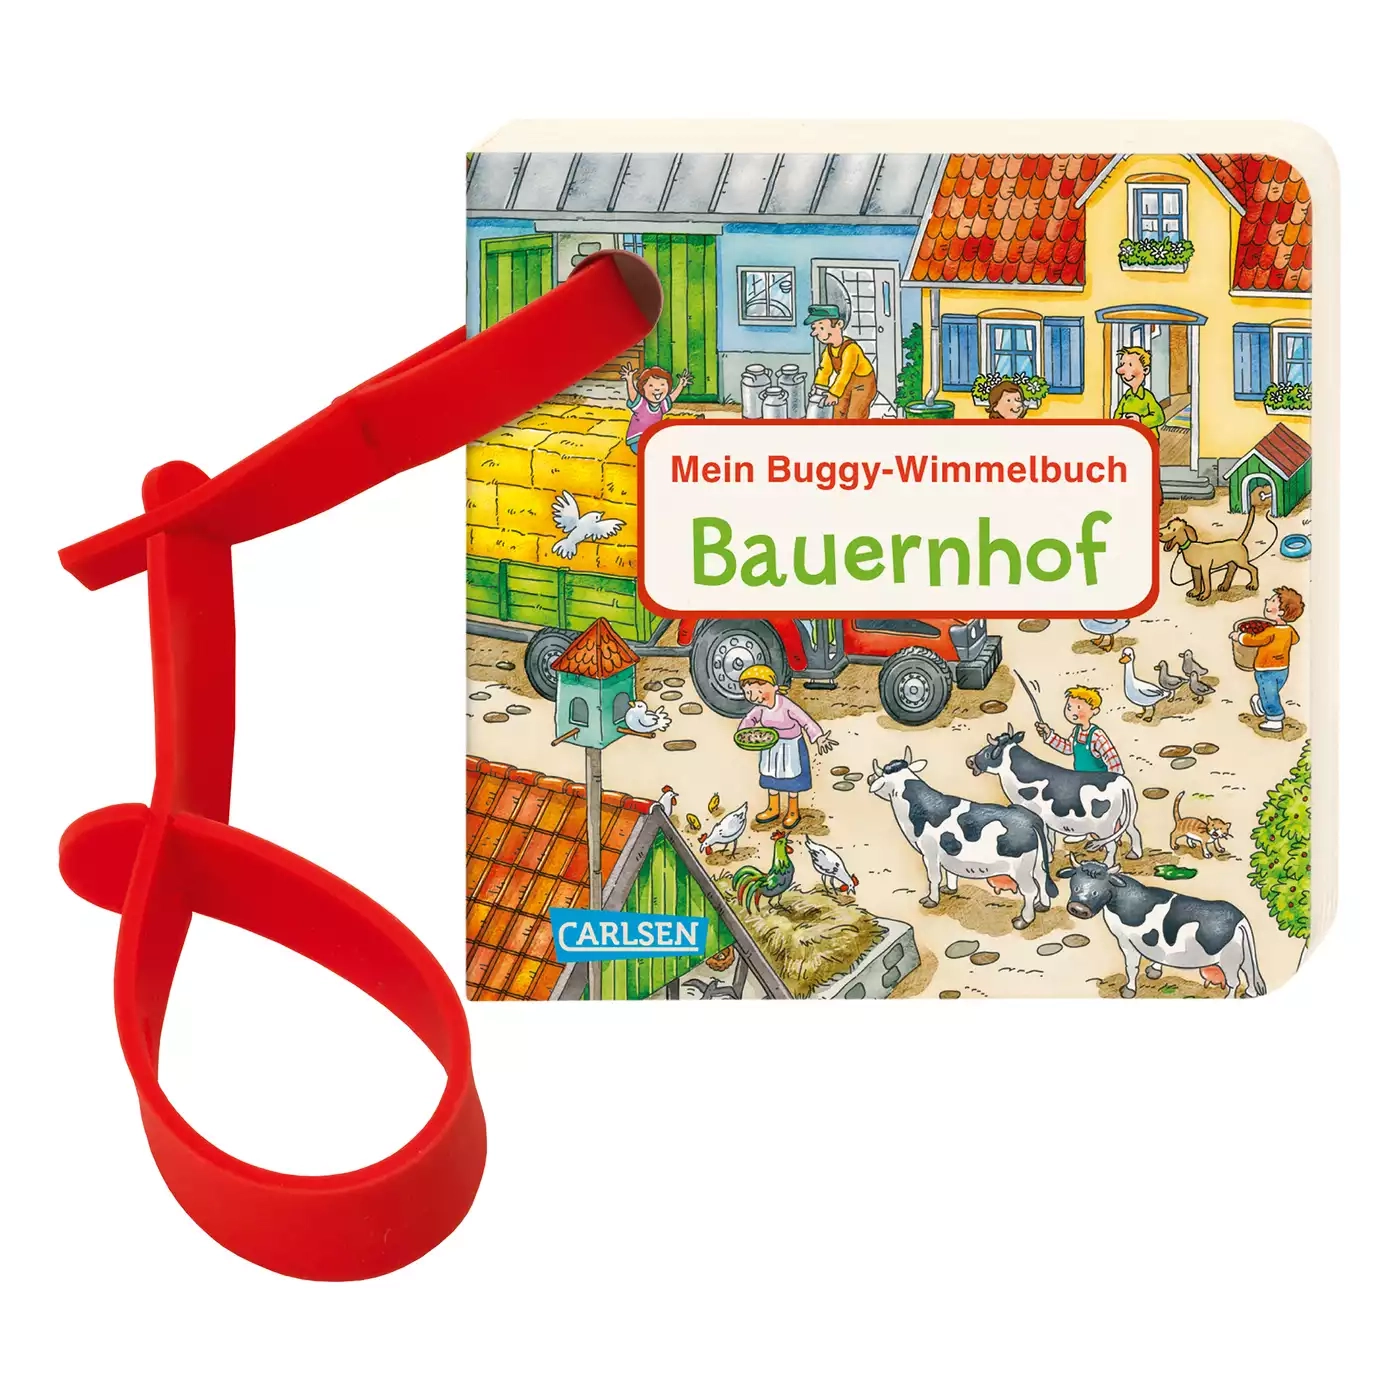 Mein Buggy-Wimmelbuch Bauernhof CARLSEN 2000576422280 3